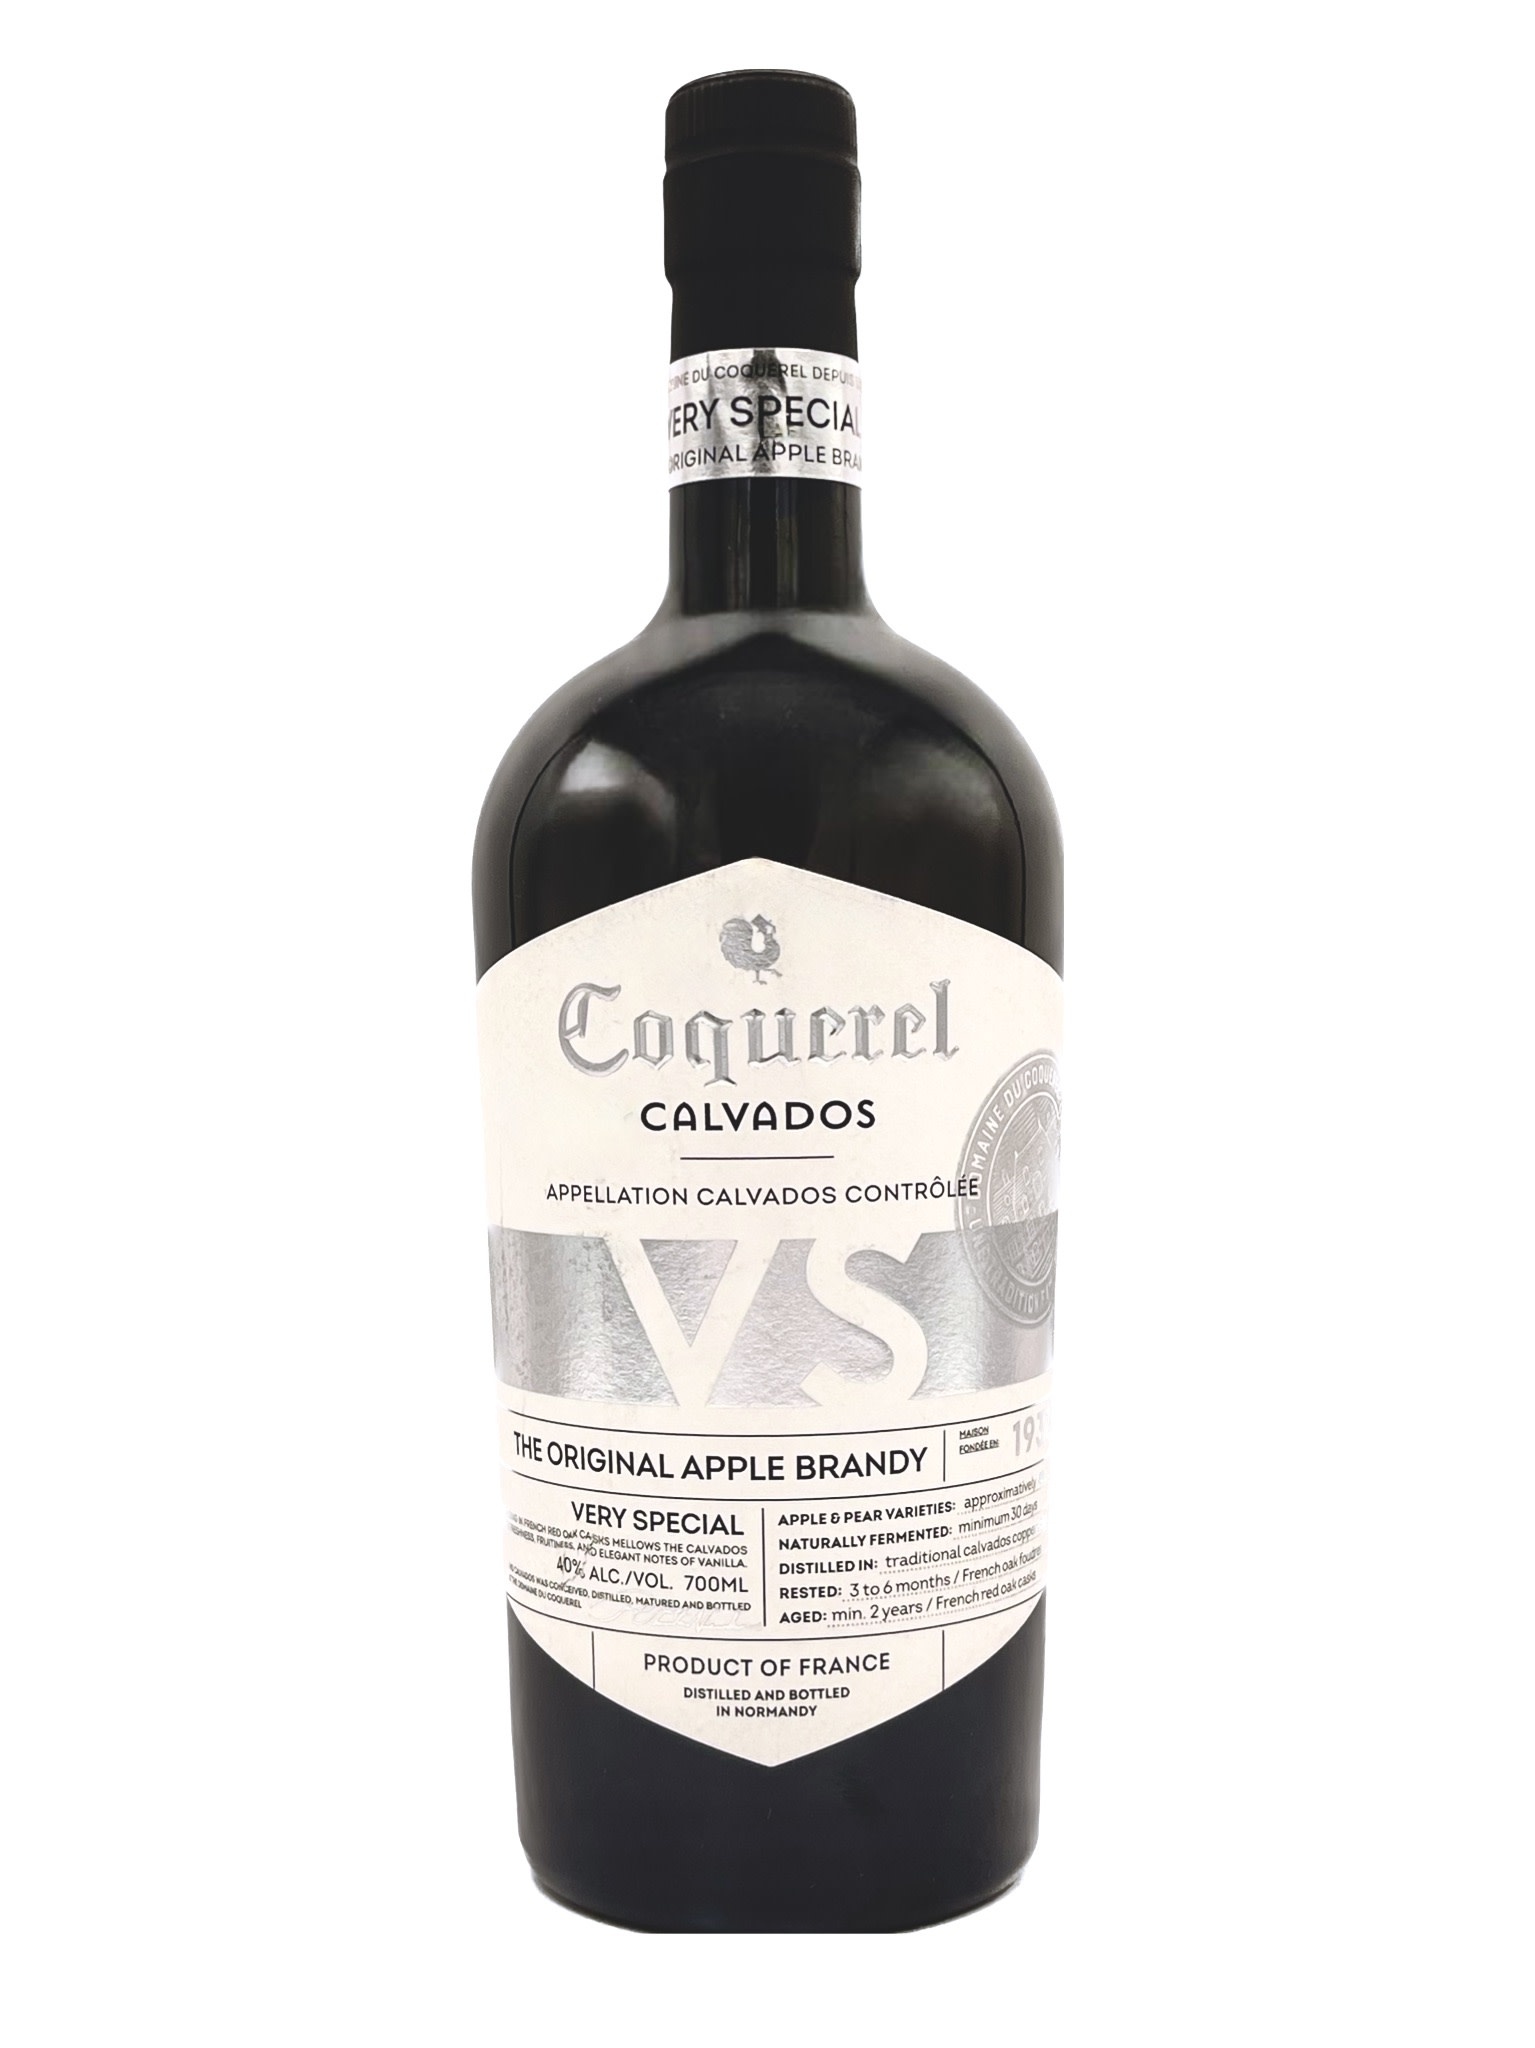 Coquerel Calvados “The Original Apple Brandy” 700ml (80 proof)